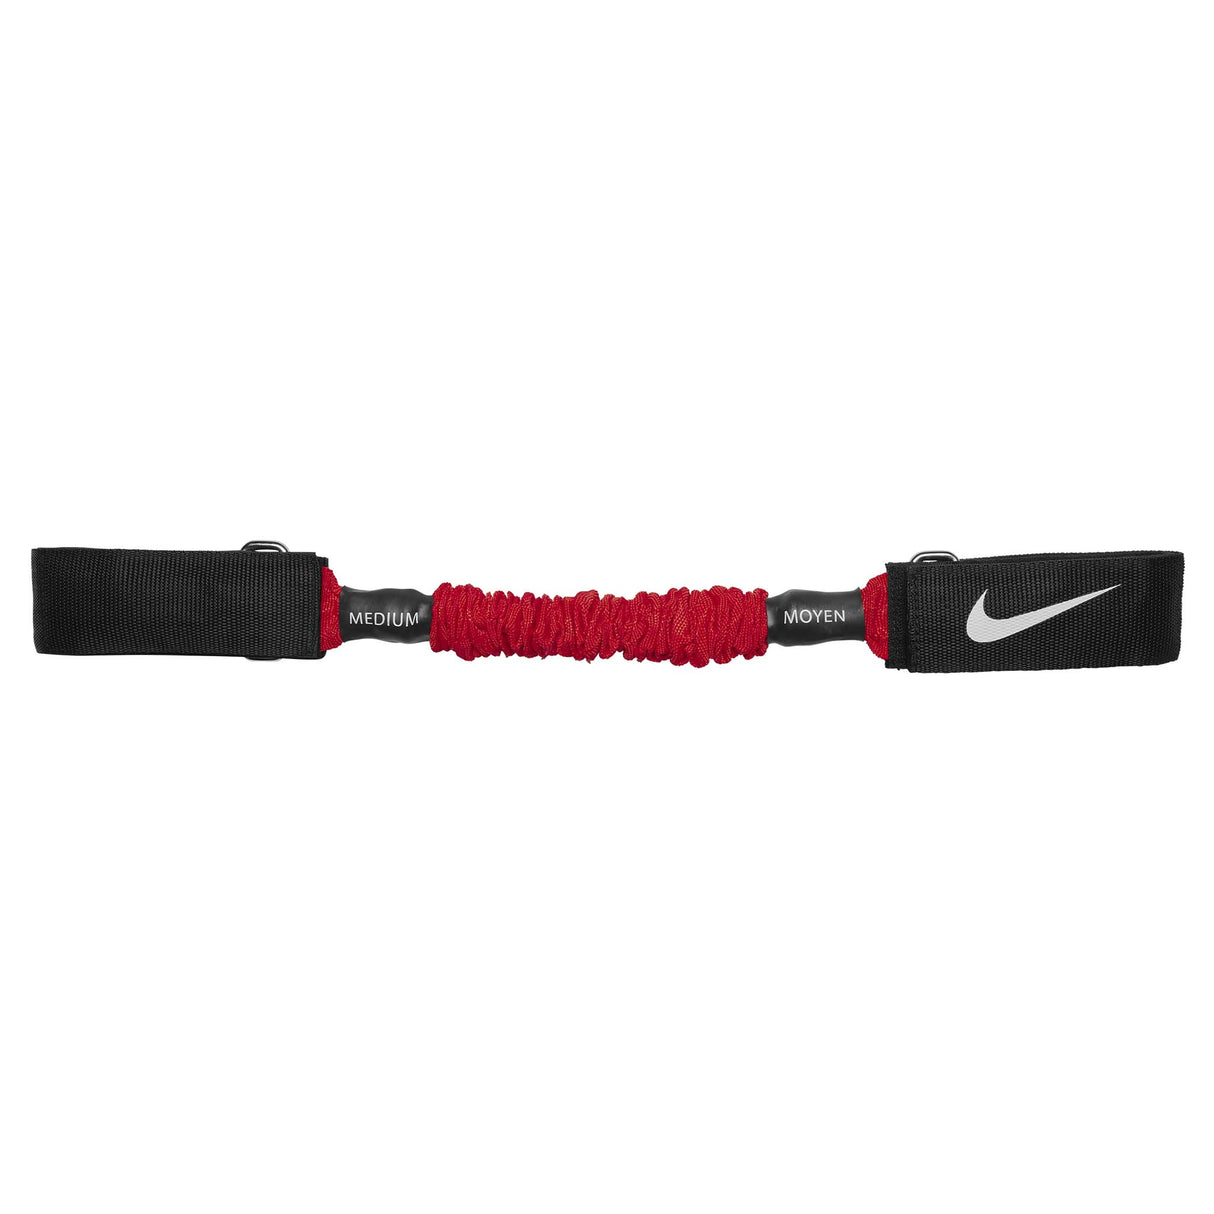 Nike Bandes de résistance latérale medium light crimson